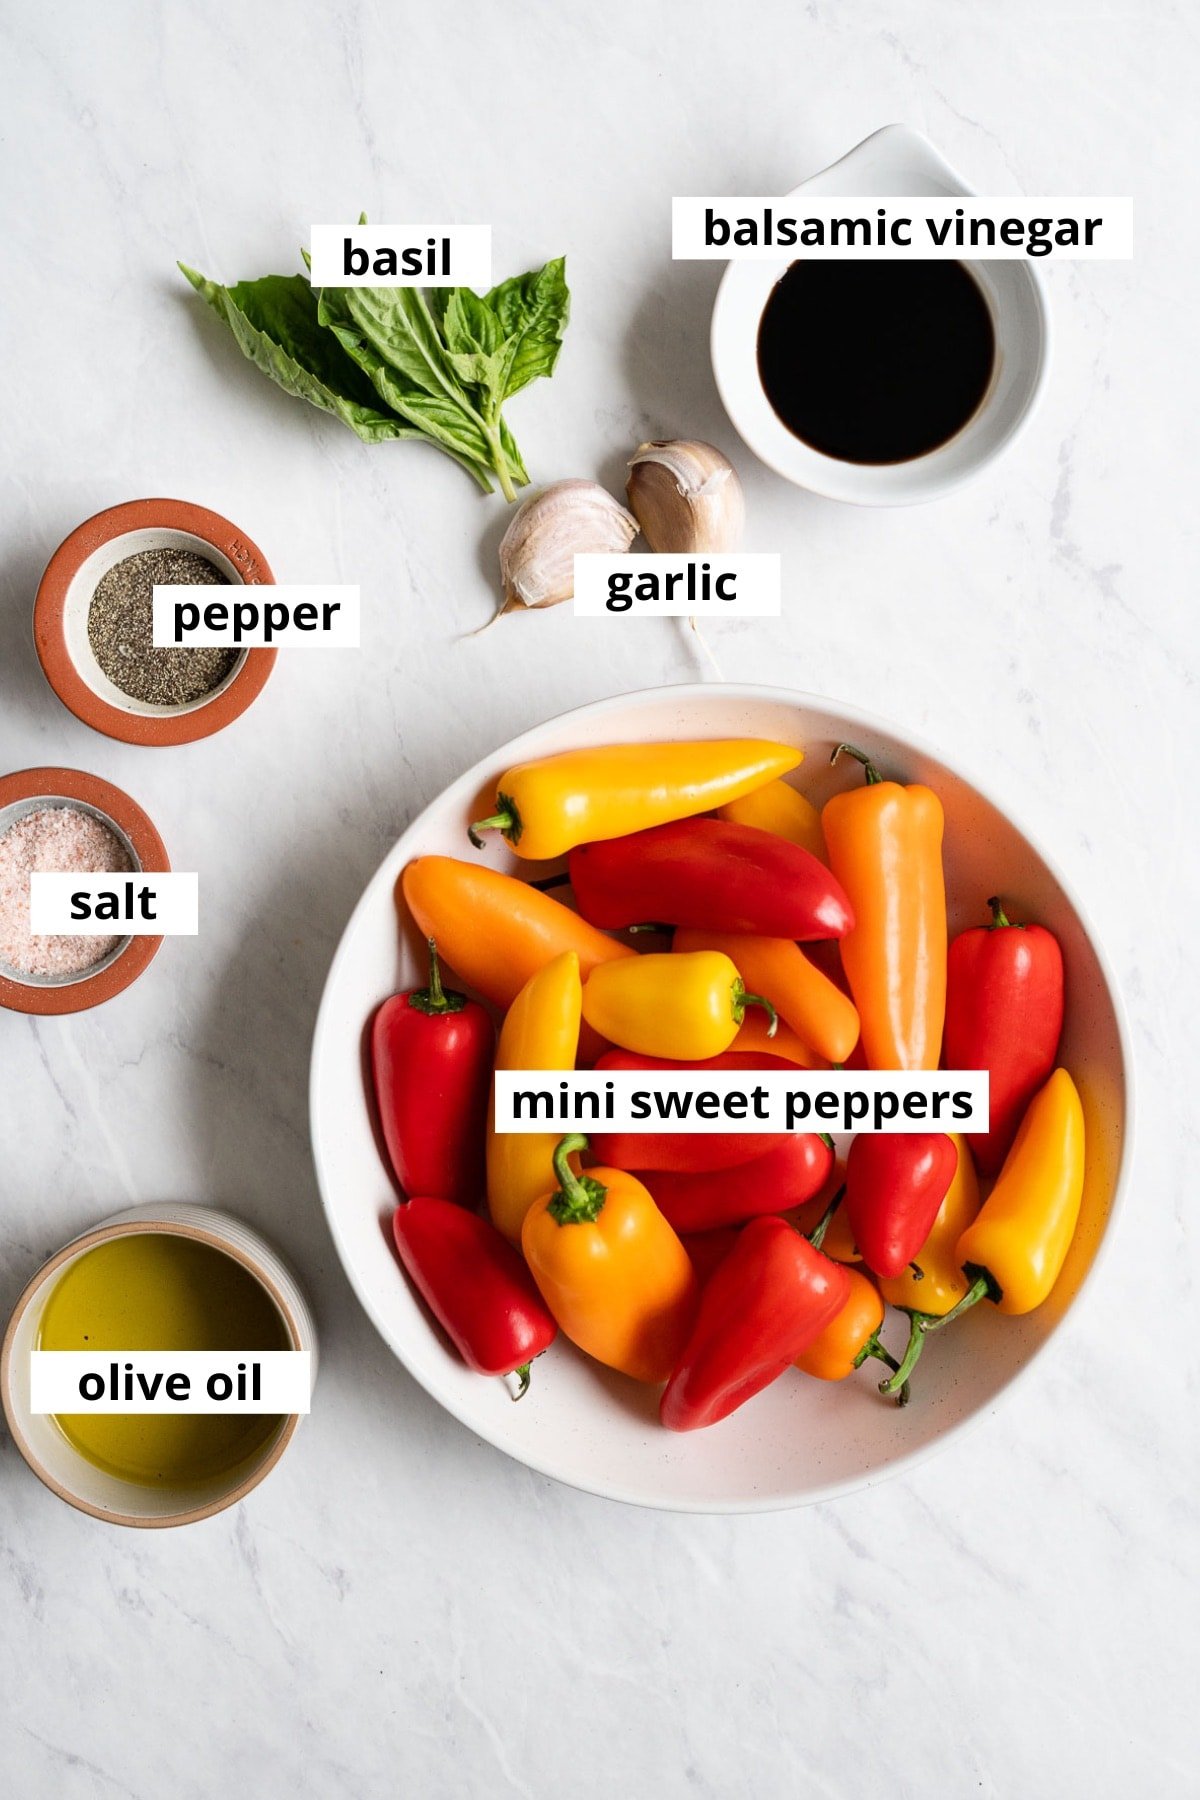 Raw mini sweet peppers, garlic cloves, fresh basil, olive oil, balsamic vinegar, salt and pepper.